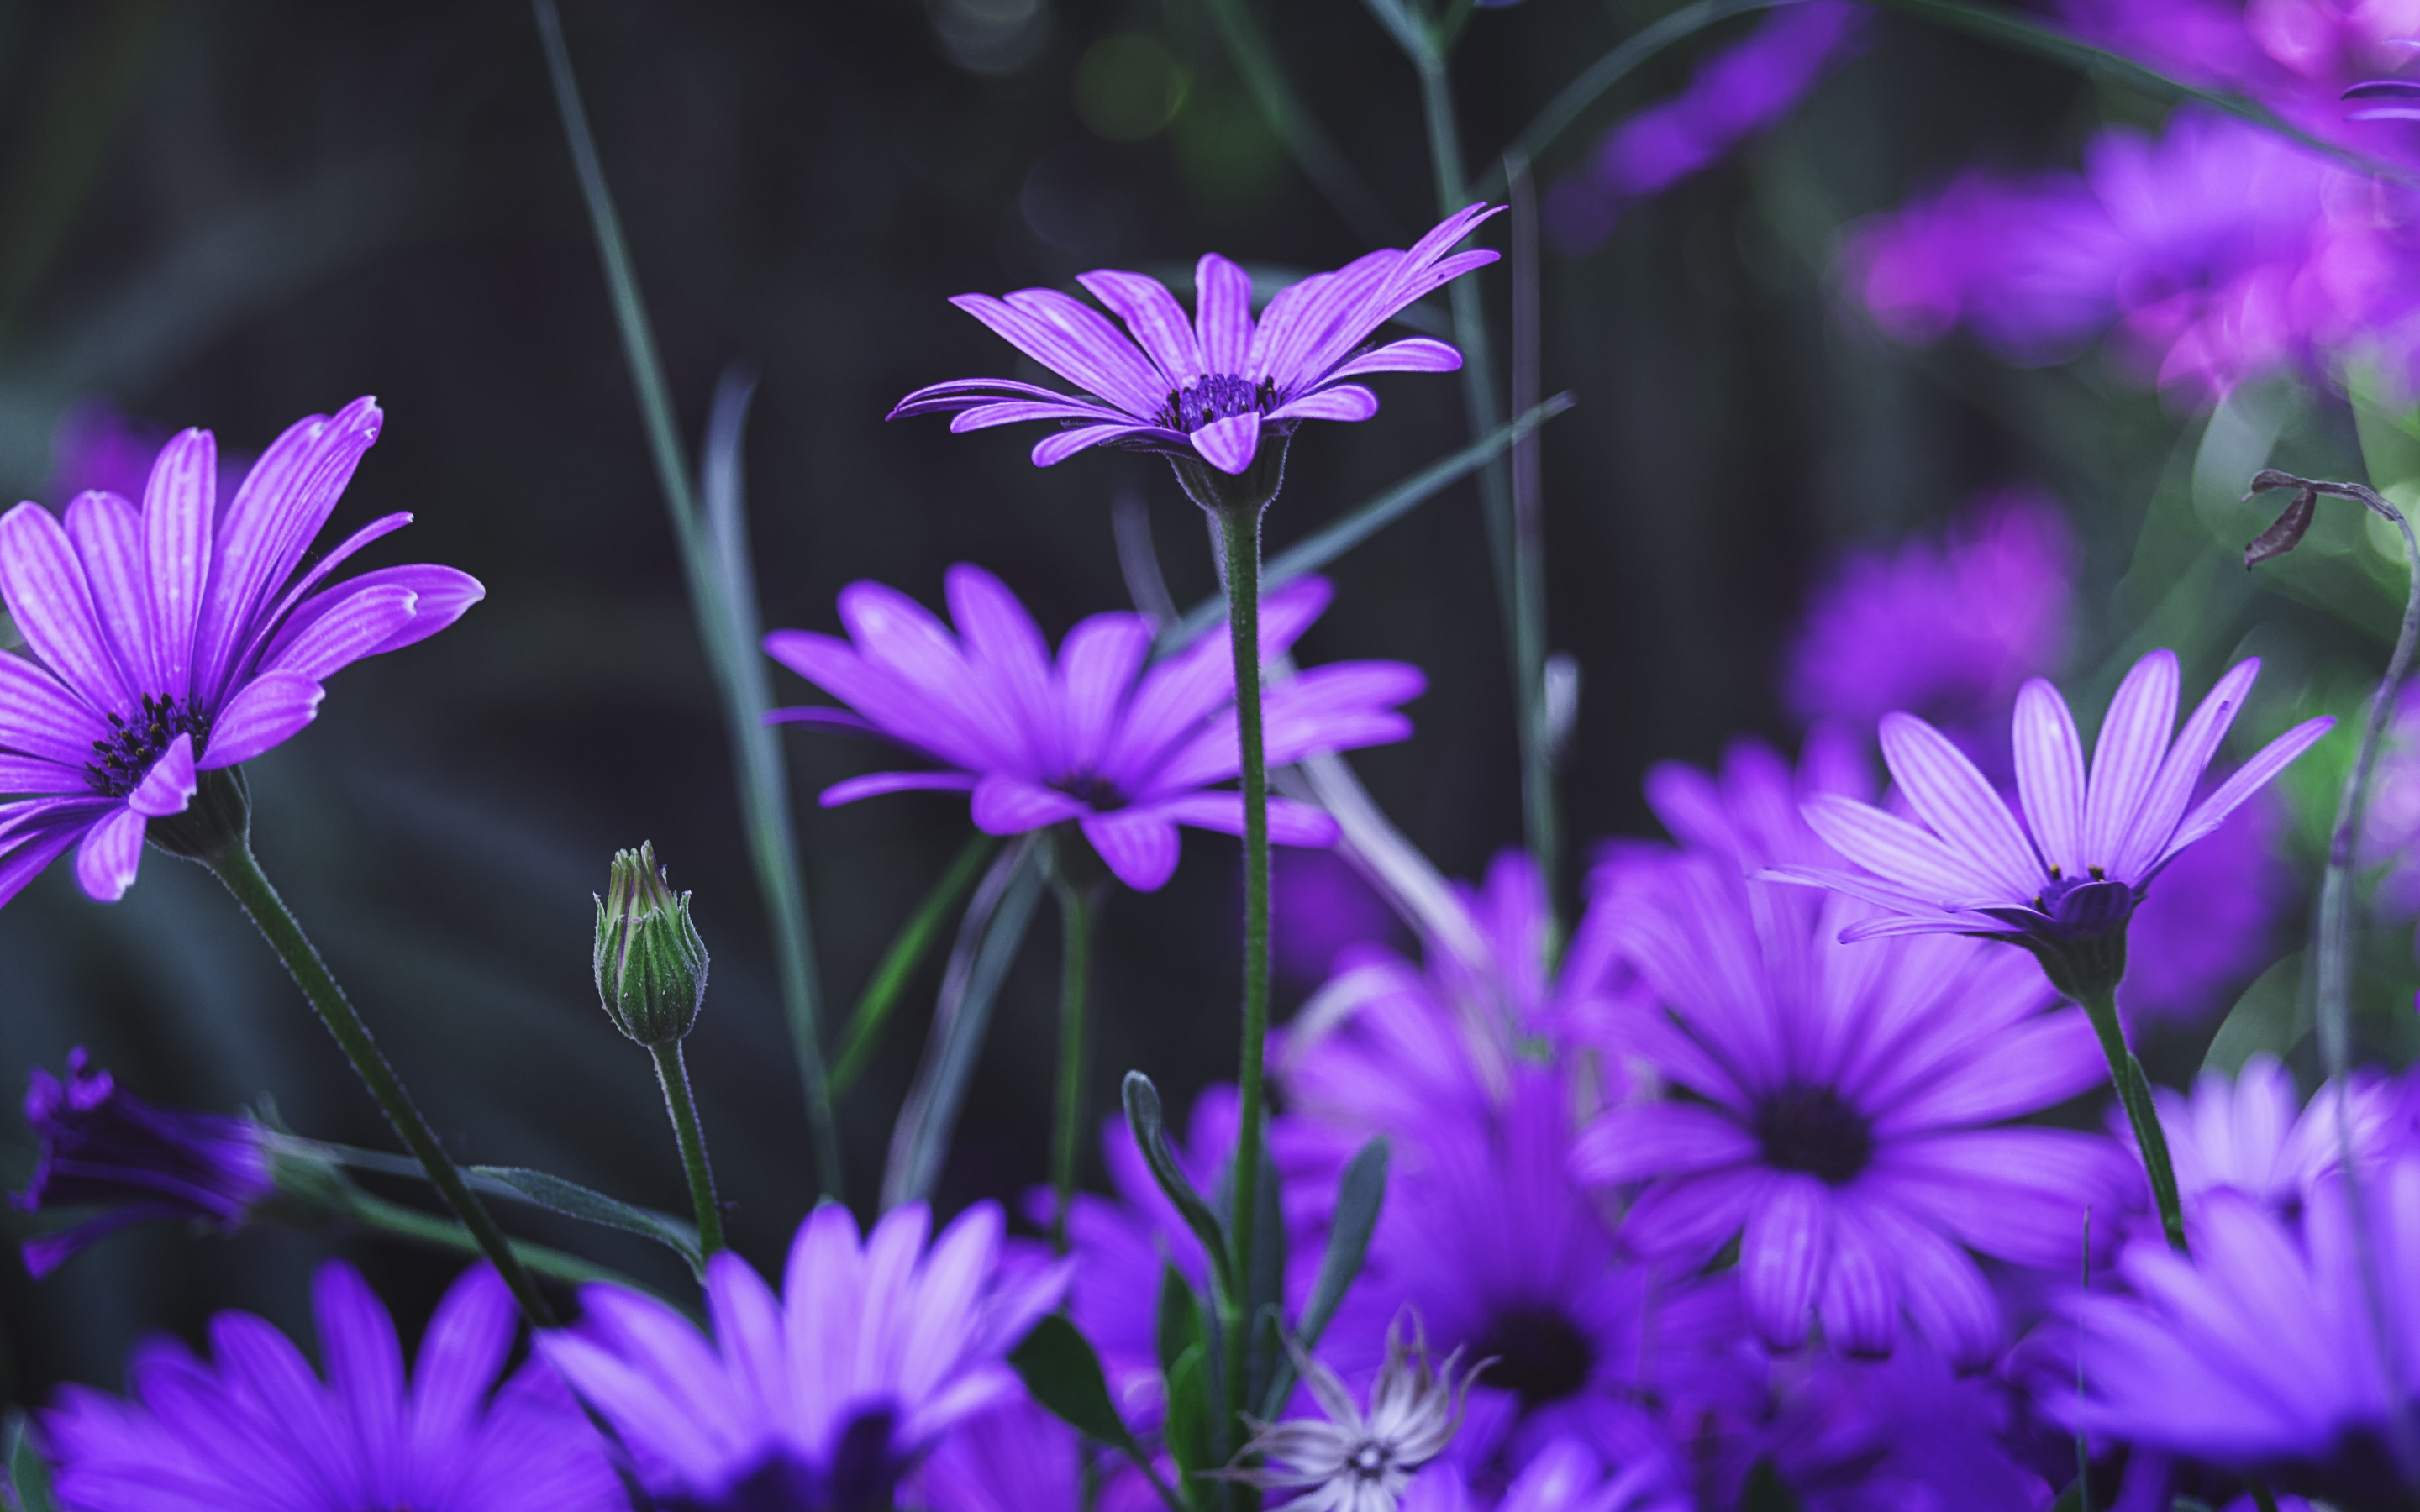 Garden, flowers, purple daisy, bloom, 2880x1800 wallpaper